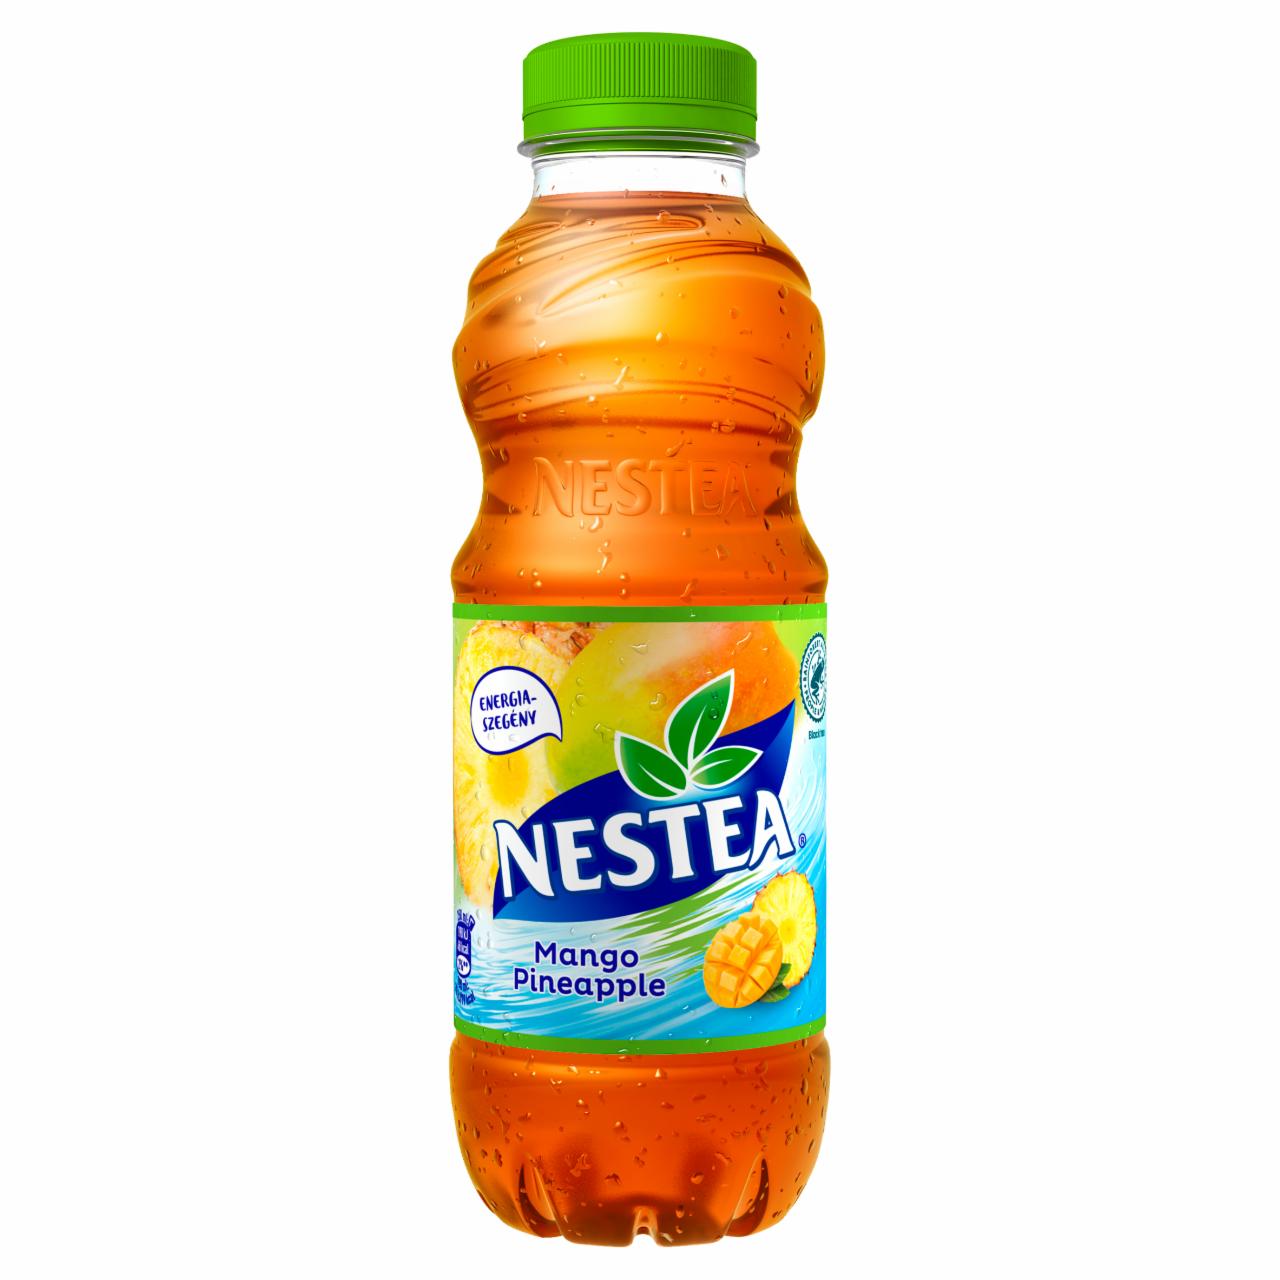 Képek - Nestea mangó-ananász ízű tea üdítőital, cukrokkal és édesítőszerrel 0,5 l